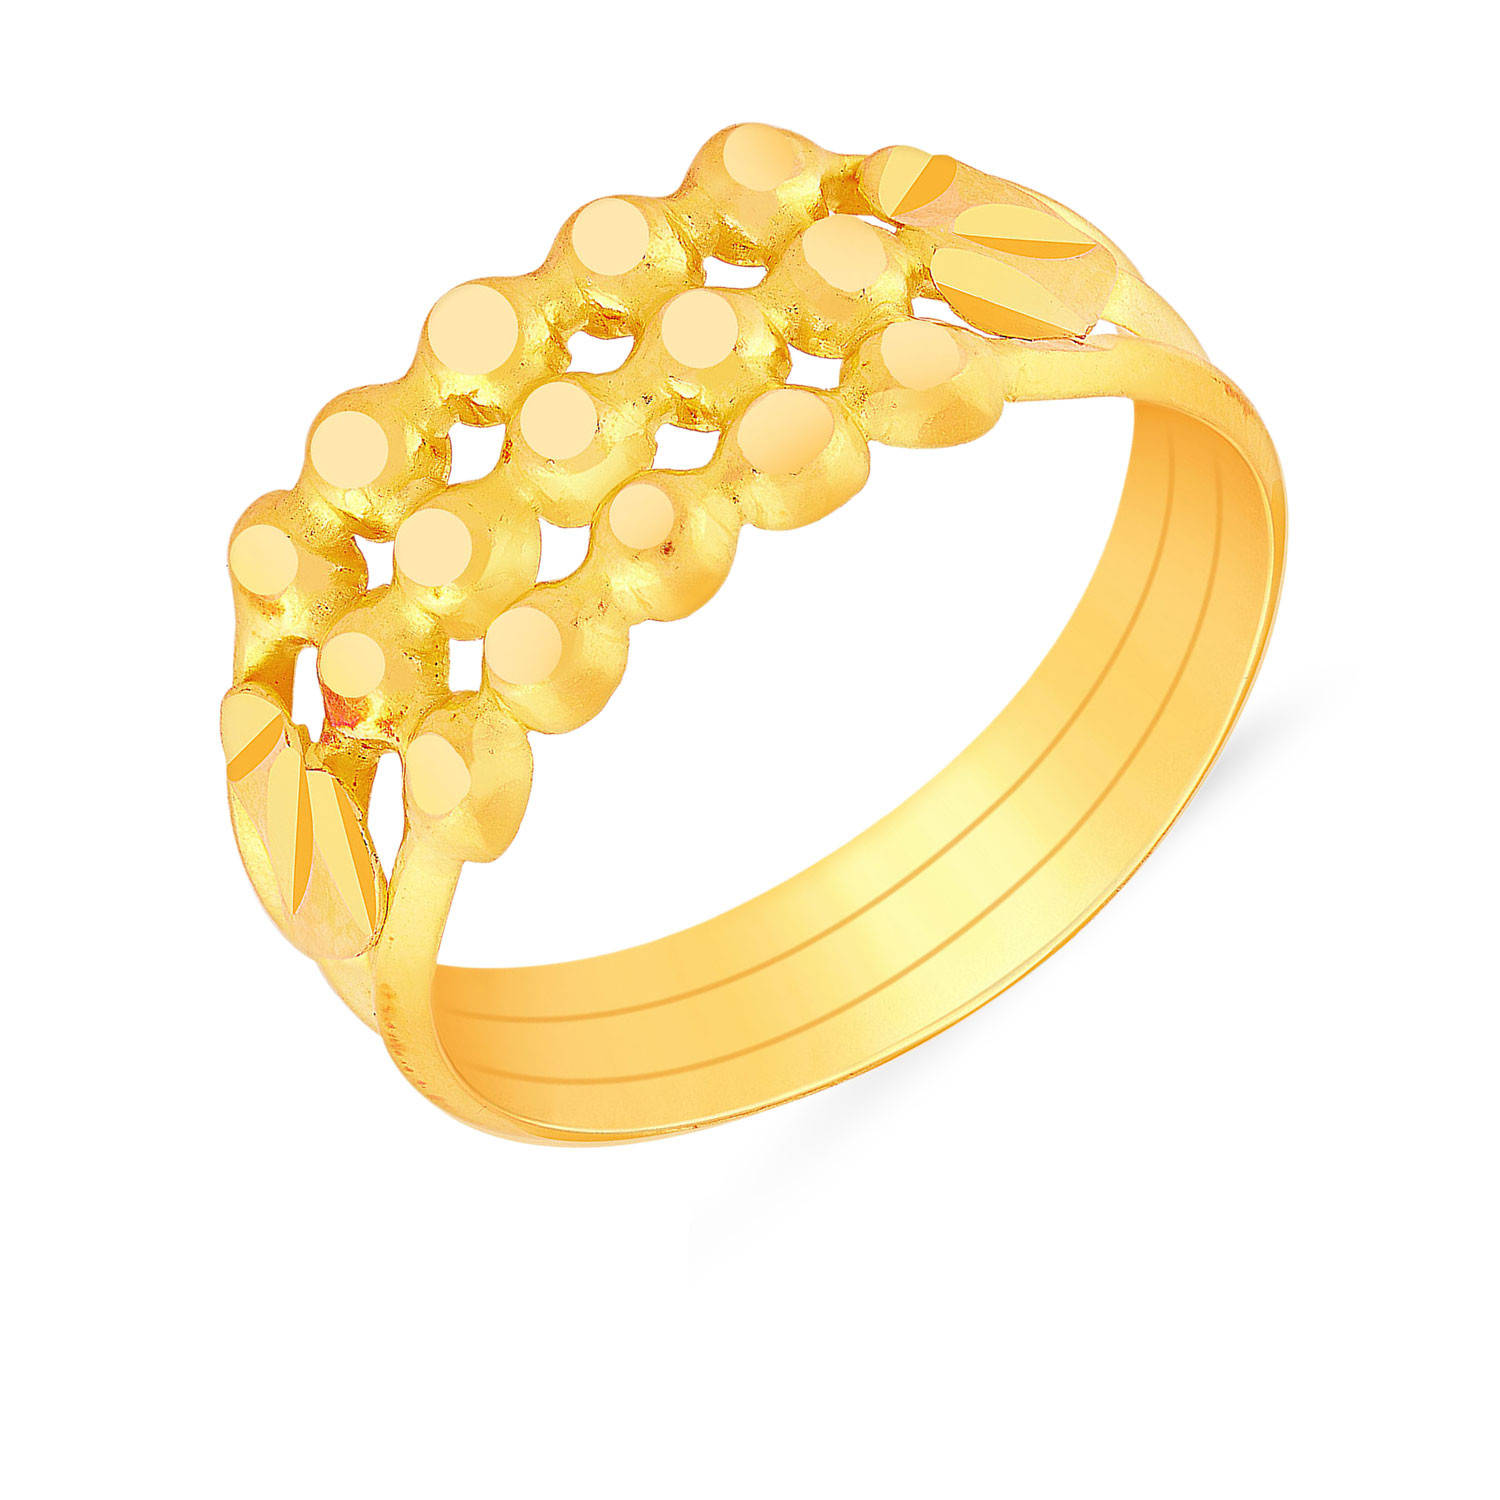 Buy Malabar Gold Rings MHAAAAAAVJFM for Women Online | Malabar Gold ...